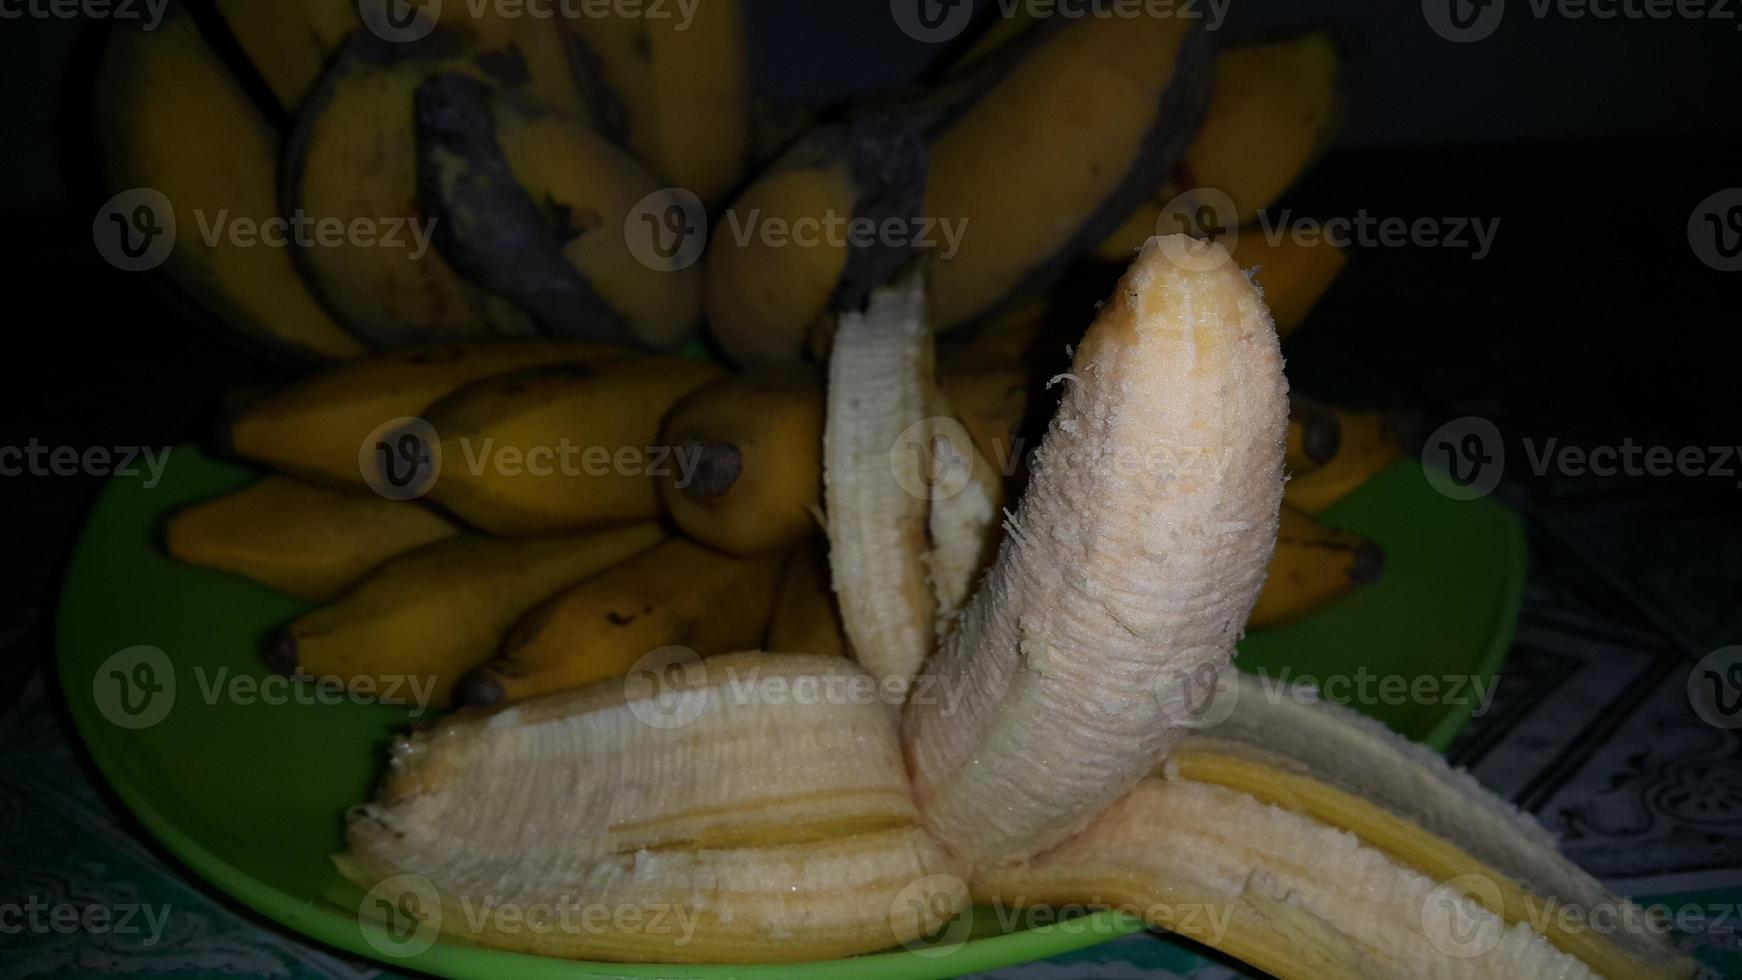 Simple photo of delicious bananas